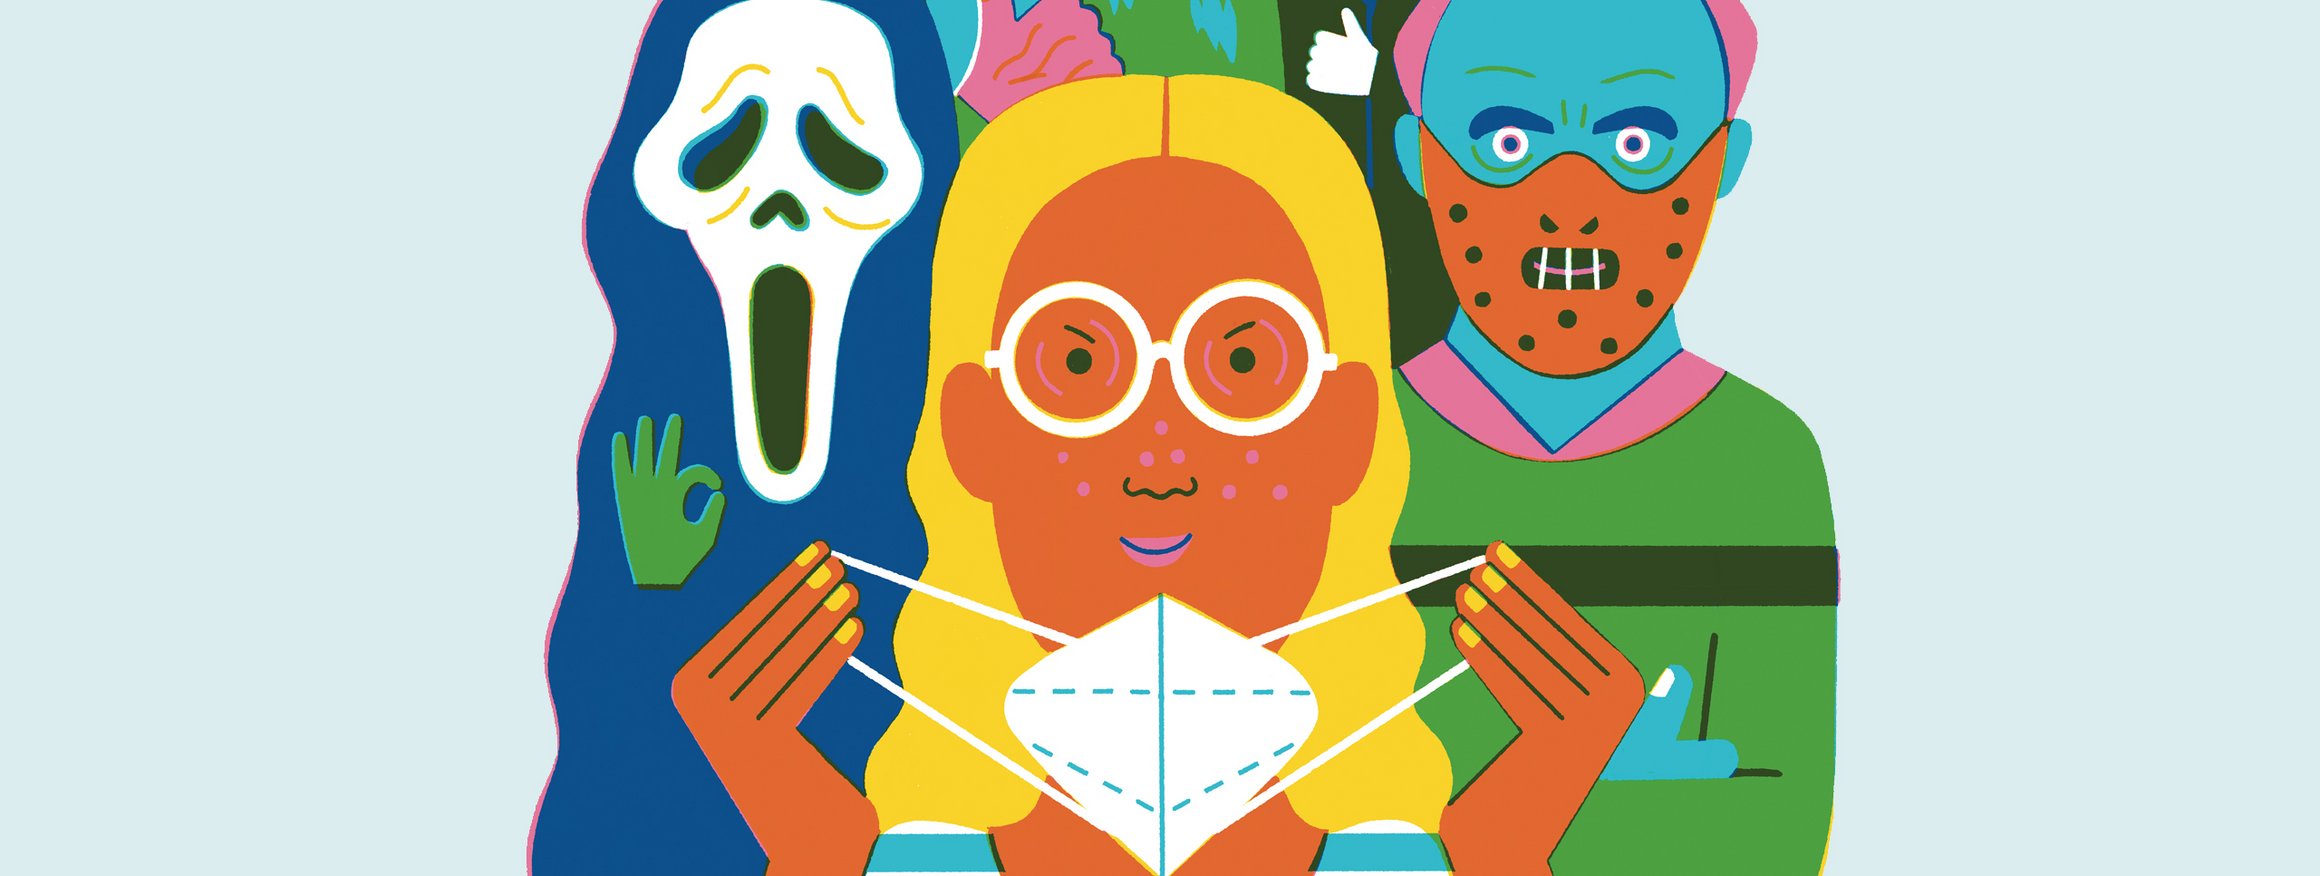 Die Illustration zeigt eine Frau mit einer Mund-Nasen-Maske, hinter ihr vier Personen mit verschiedenen Horror-Kostümen aus Filmen.